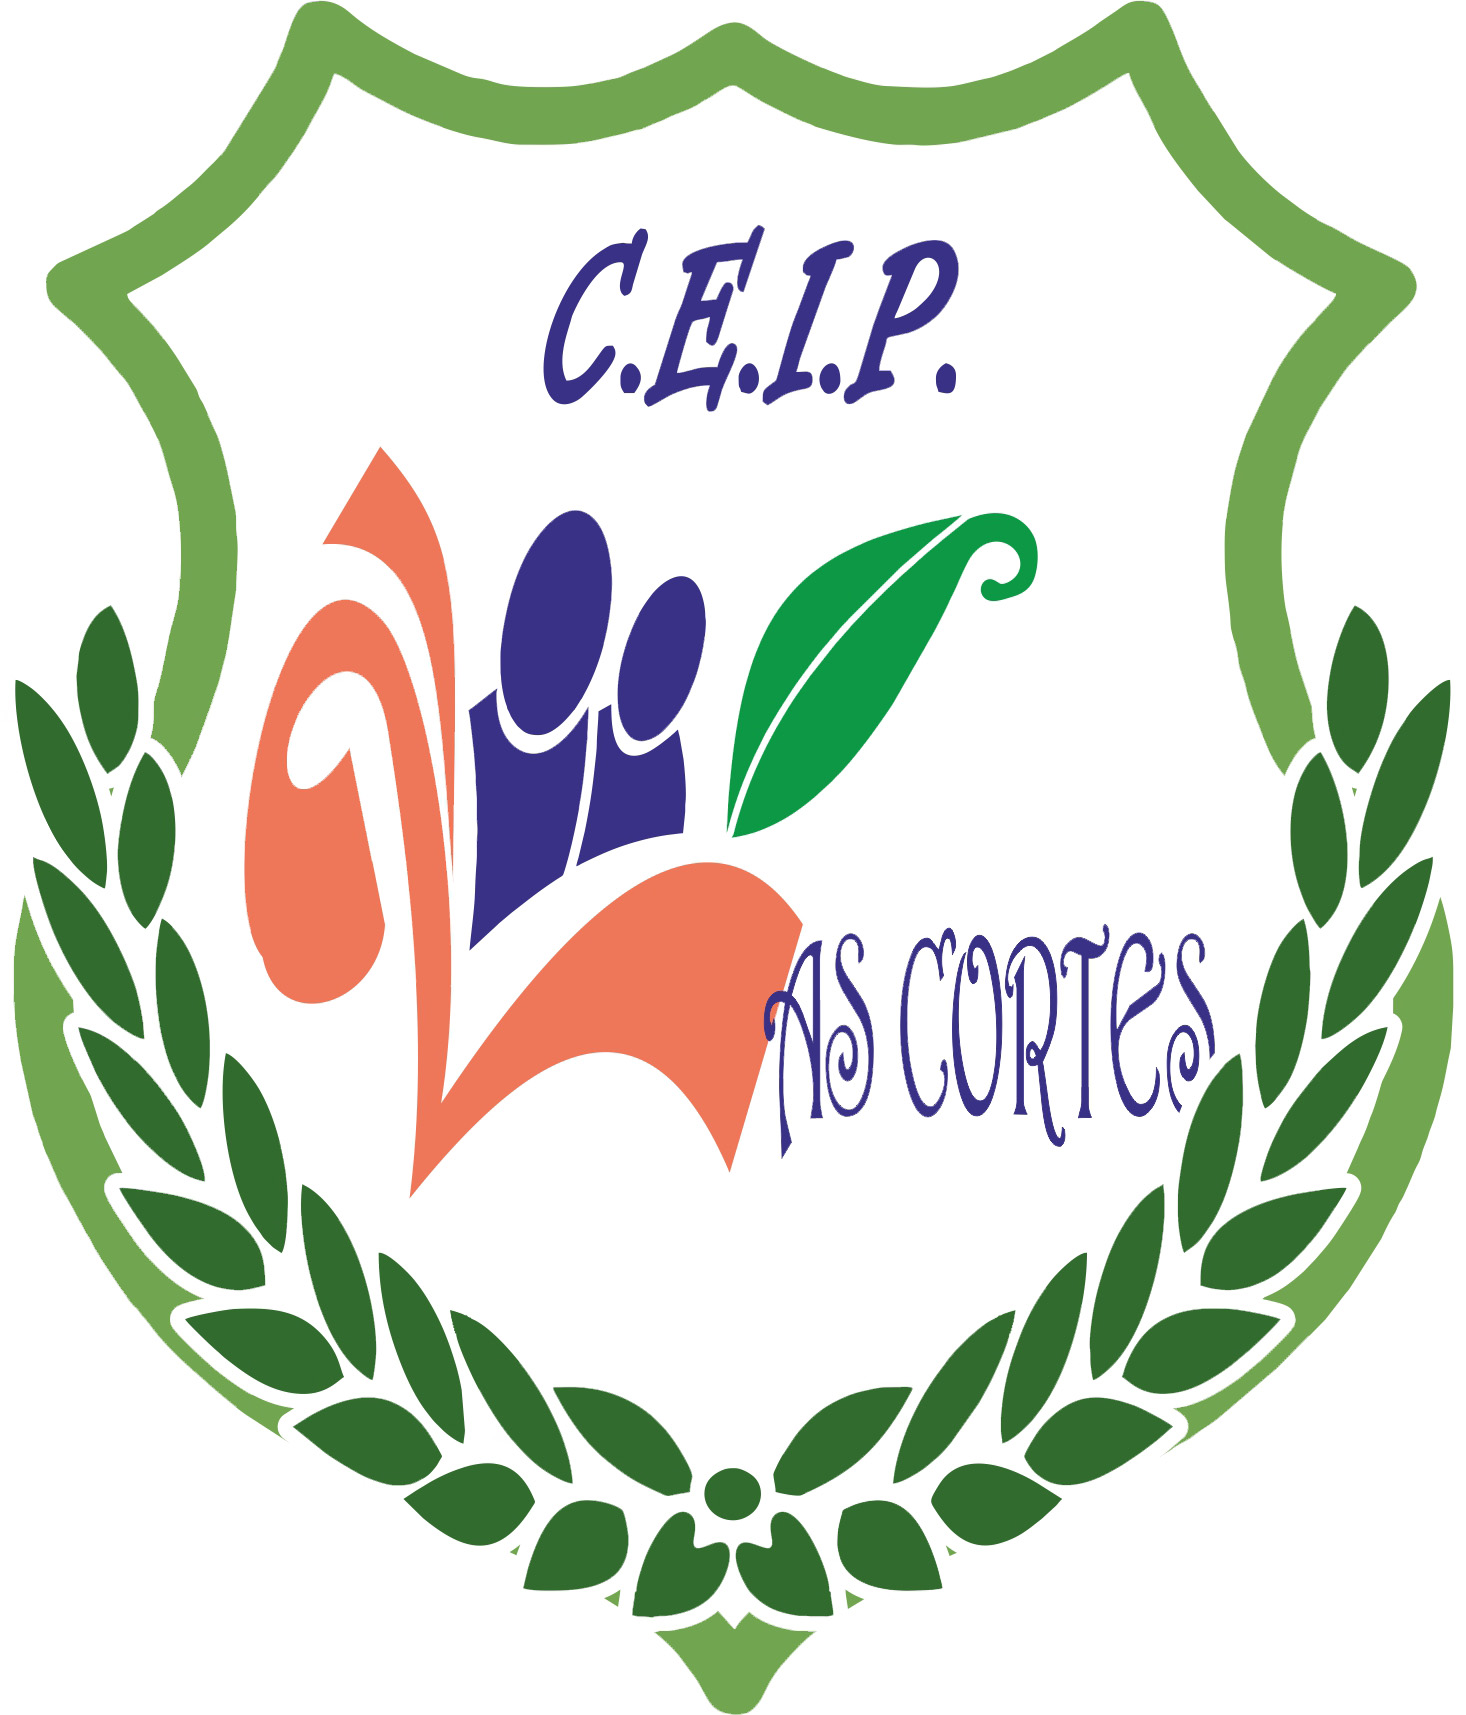 CEIP Las Cortes